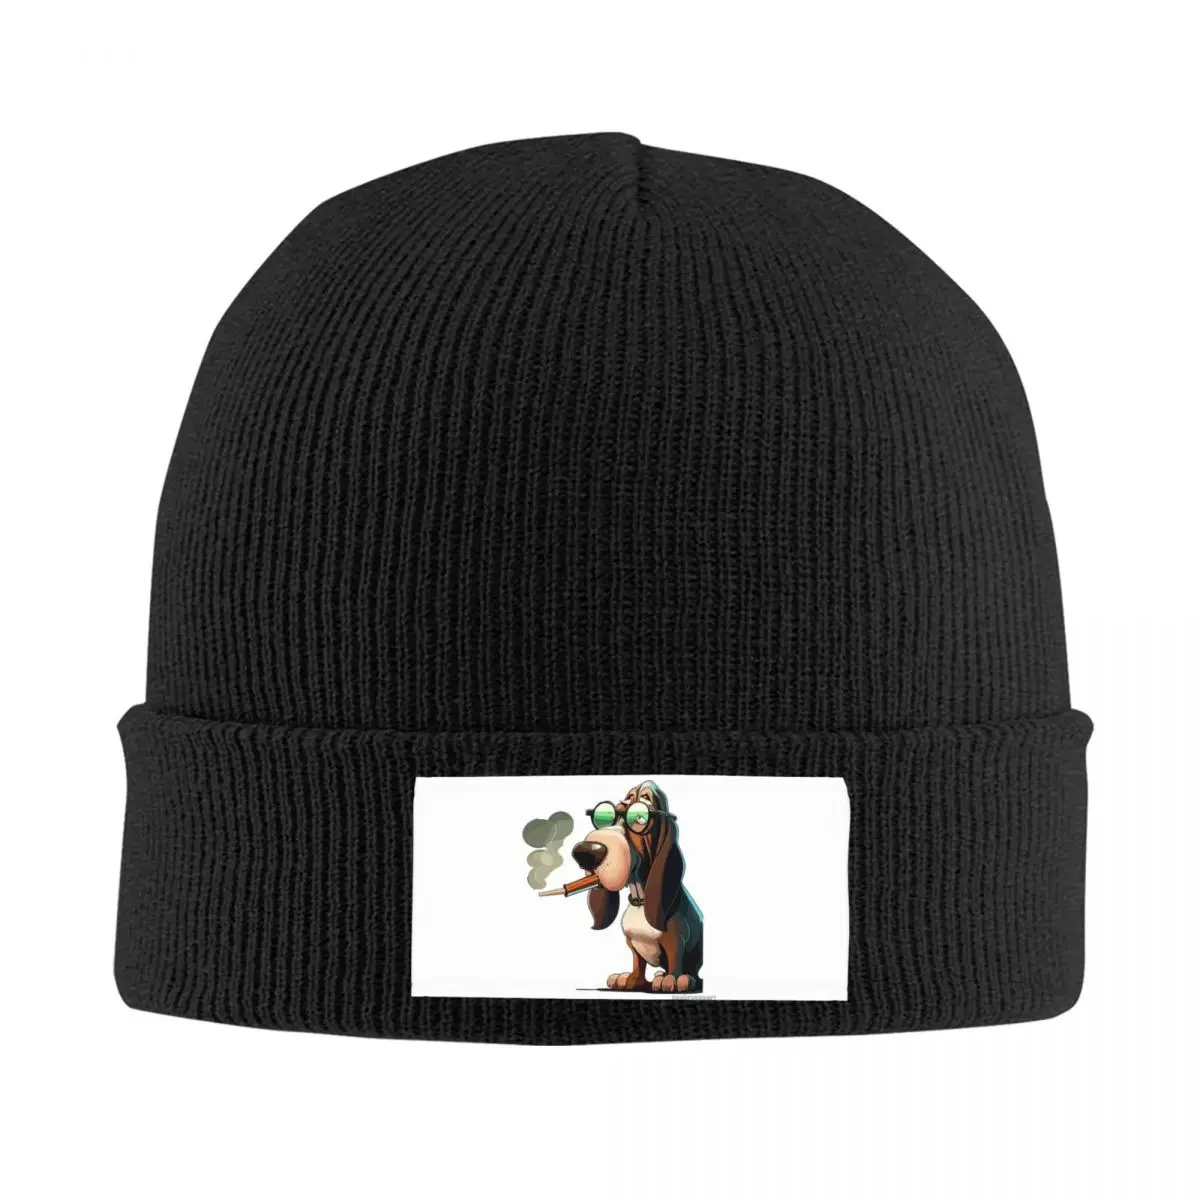 

Winston - Smokey Specs Knitted Hat Velvet Applique For Winter Great Gift